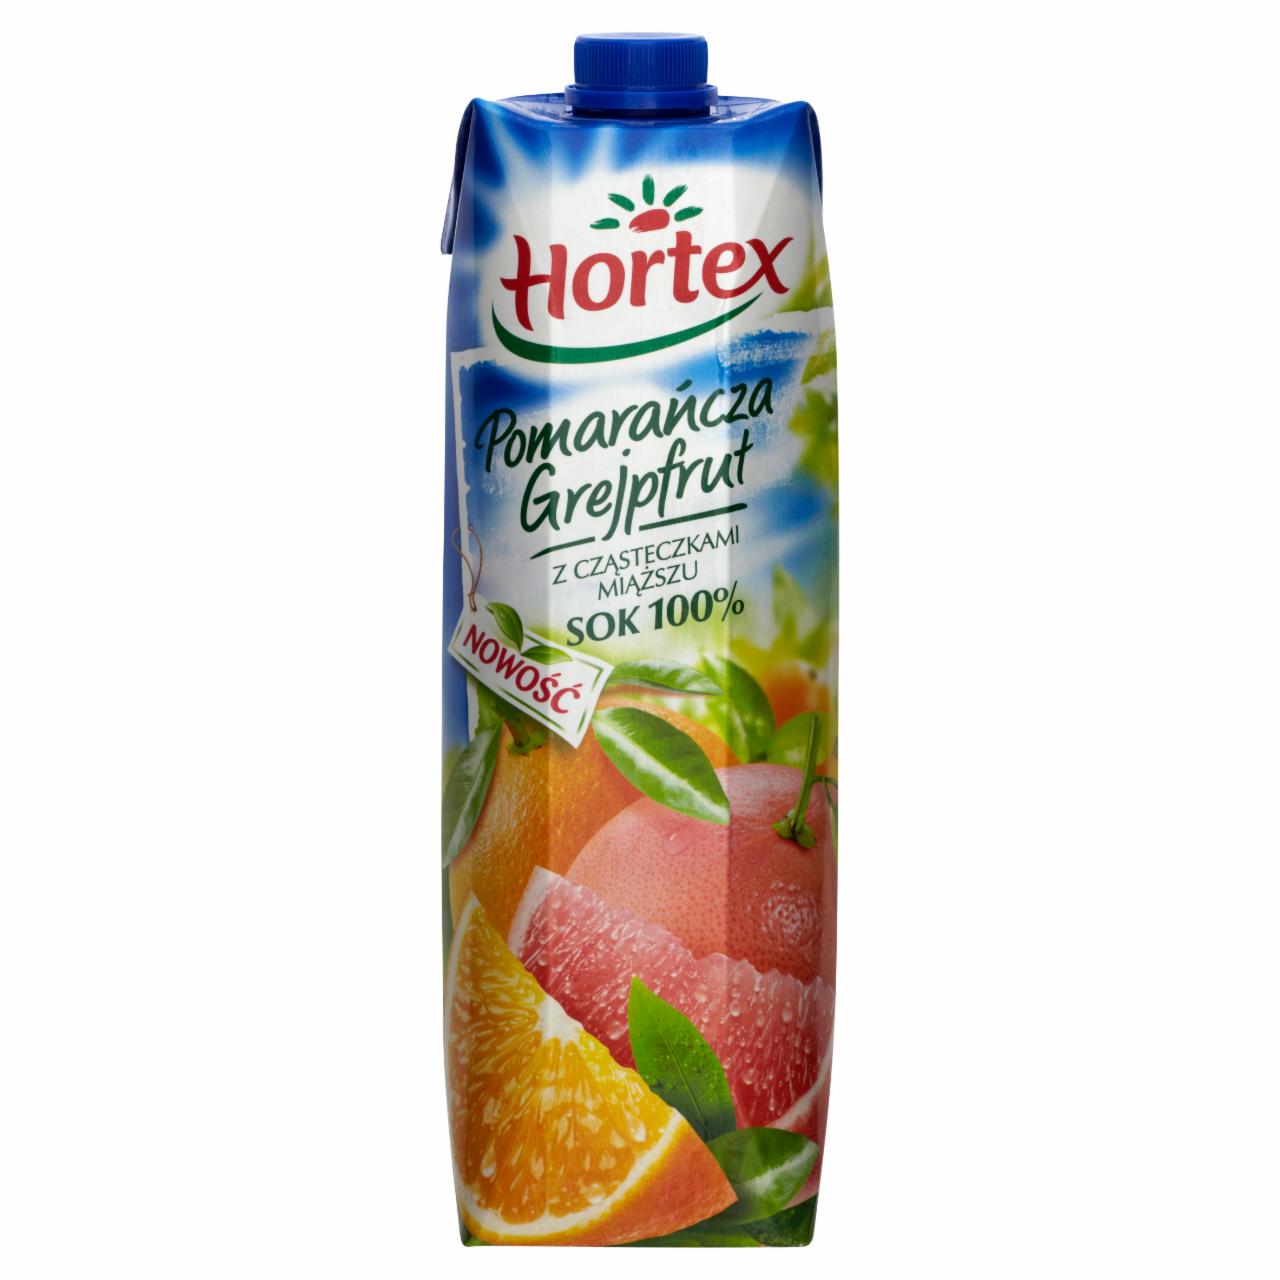 Zdjęcia - Hortex Pomarańcza Grejpfrut z cząstkami miąższu Sok 100% 1 l